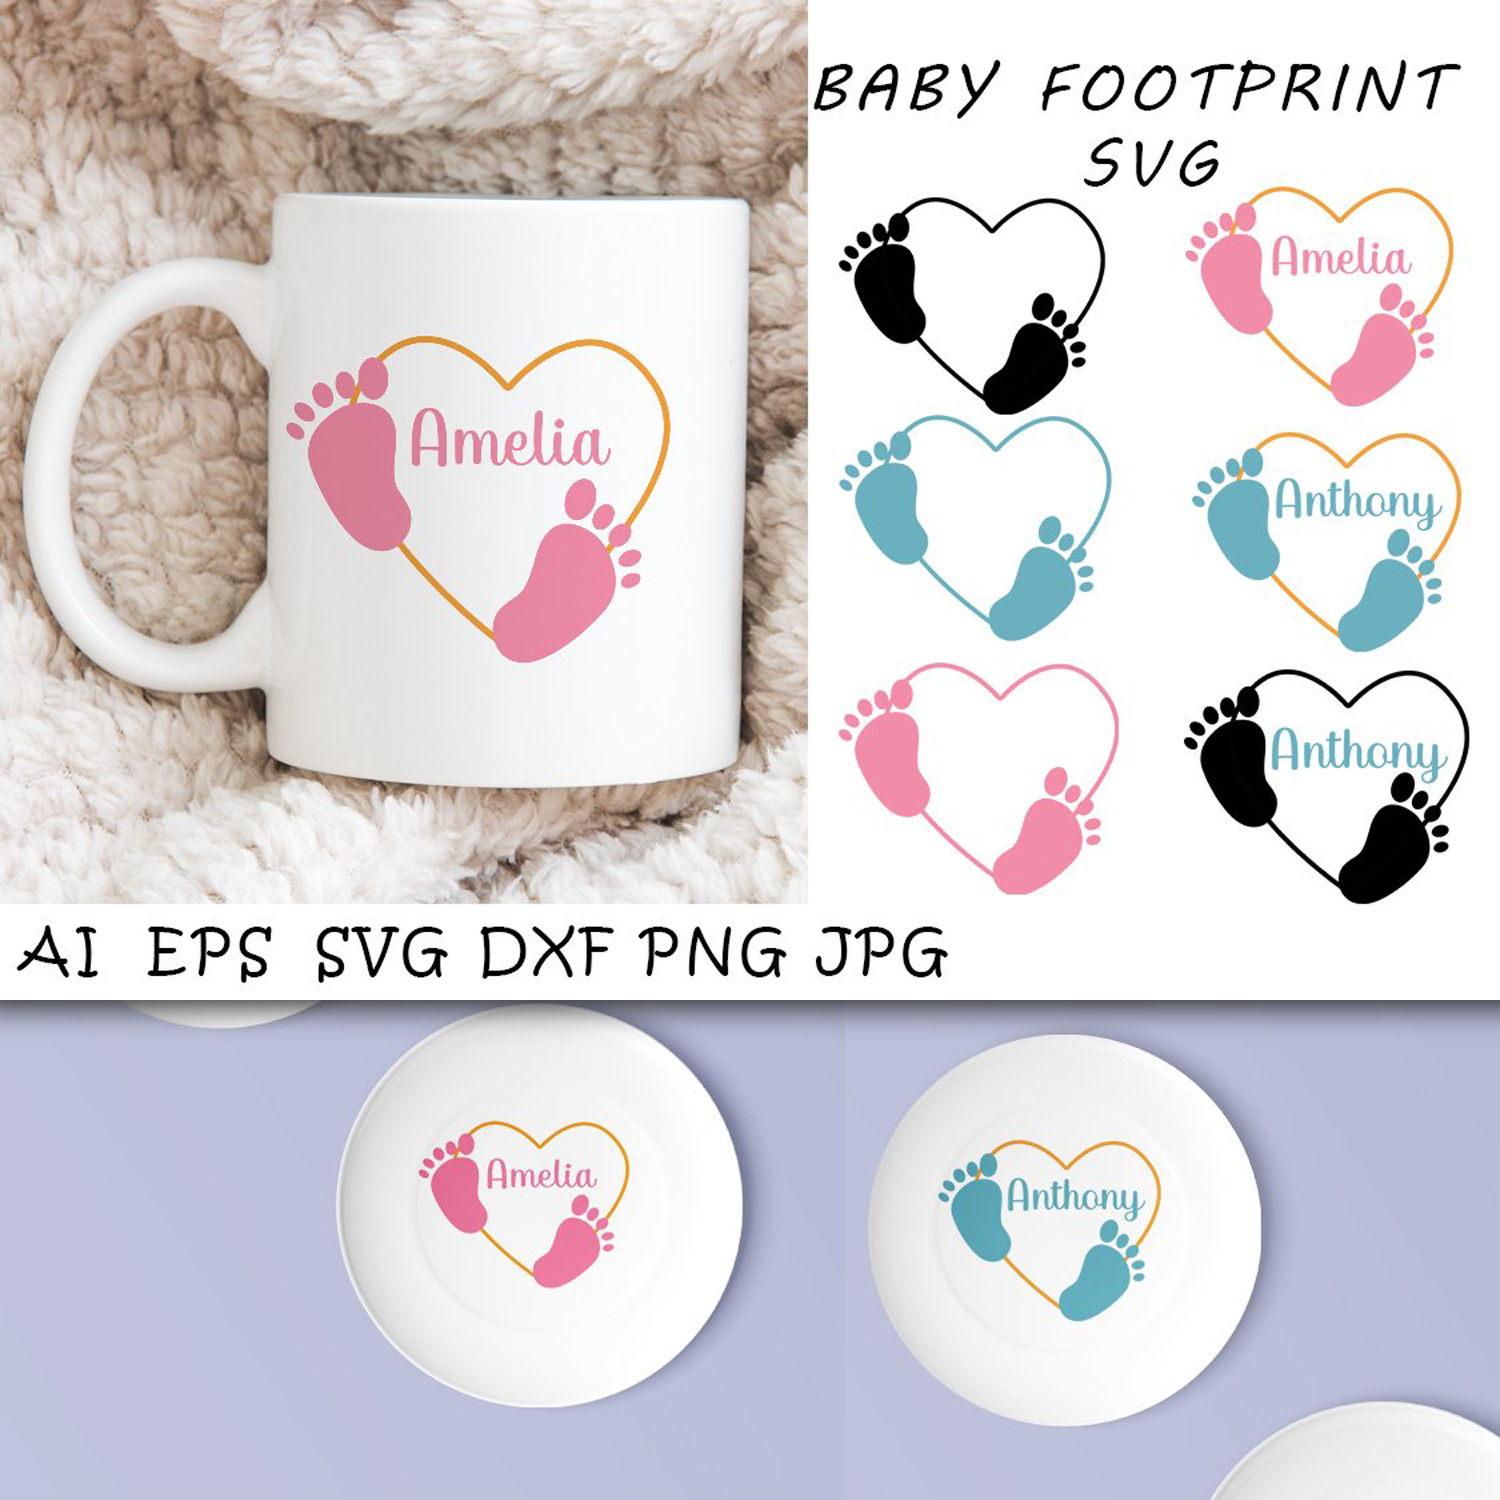 Prints of baby footprint monogram.